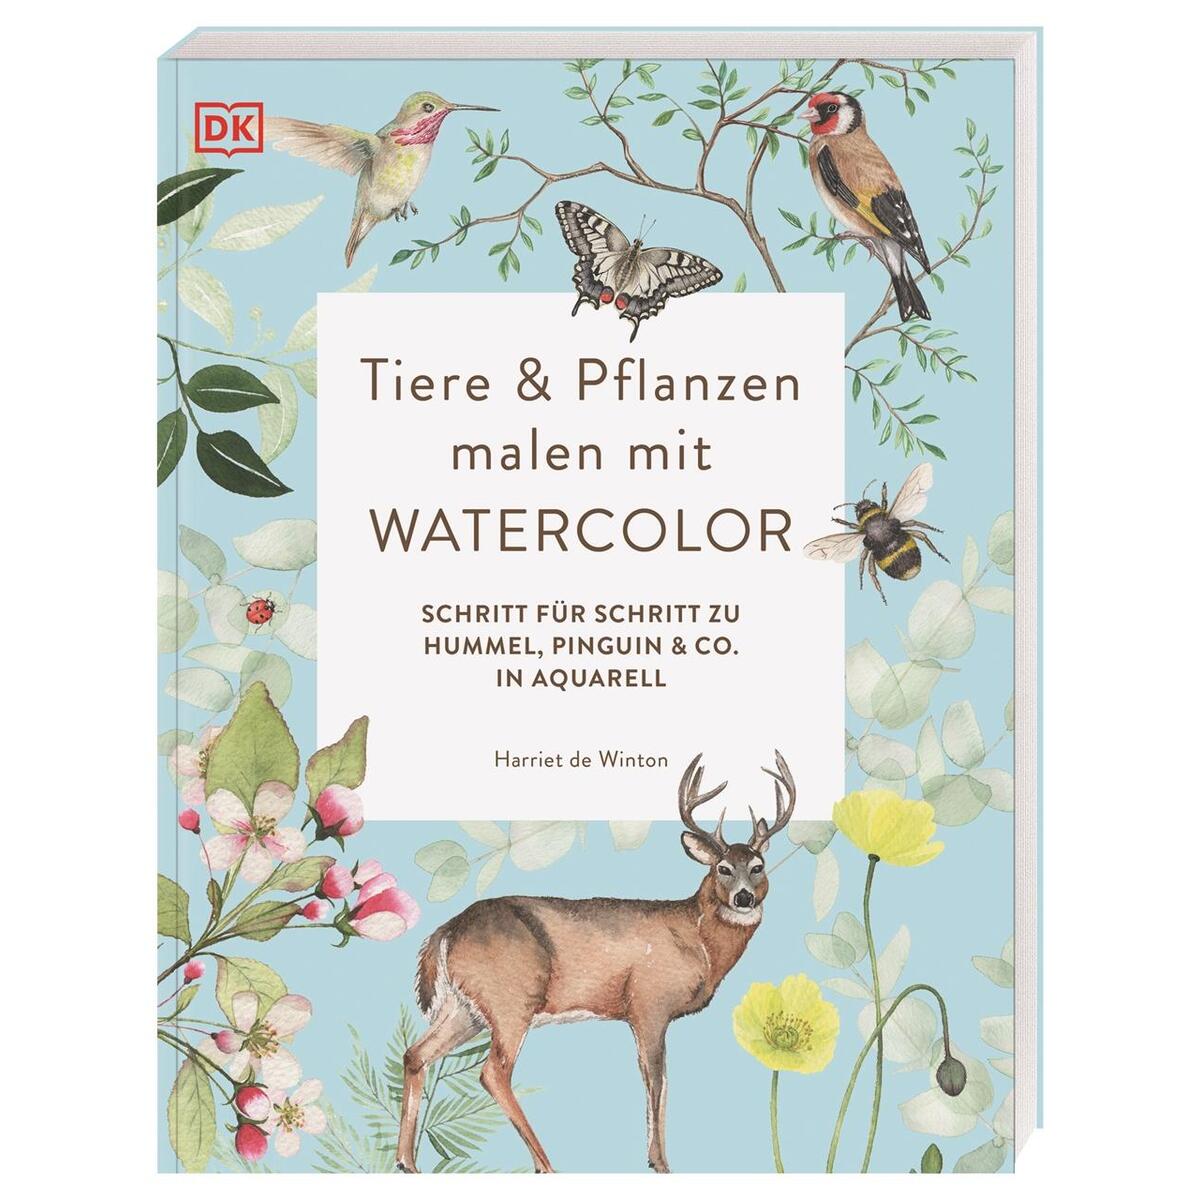 Tiere und Pflanzen malen mit Watercolor von Dorling Kindersley Verlag